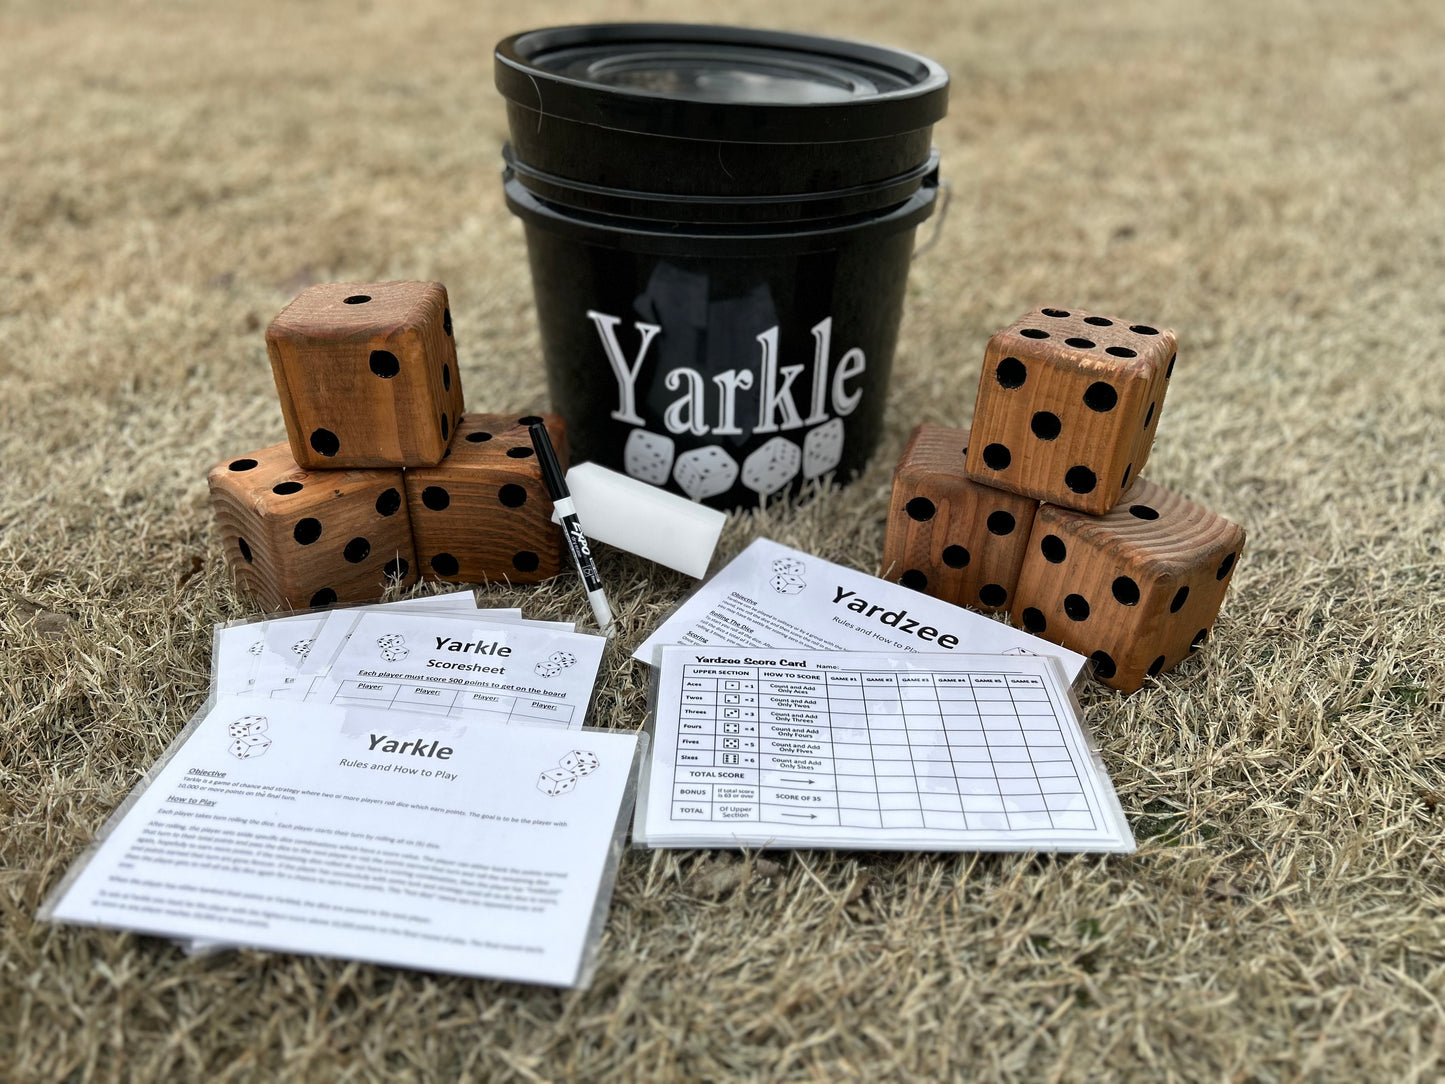 Giant Yardzee/Yarkle Game